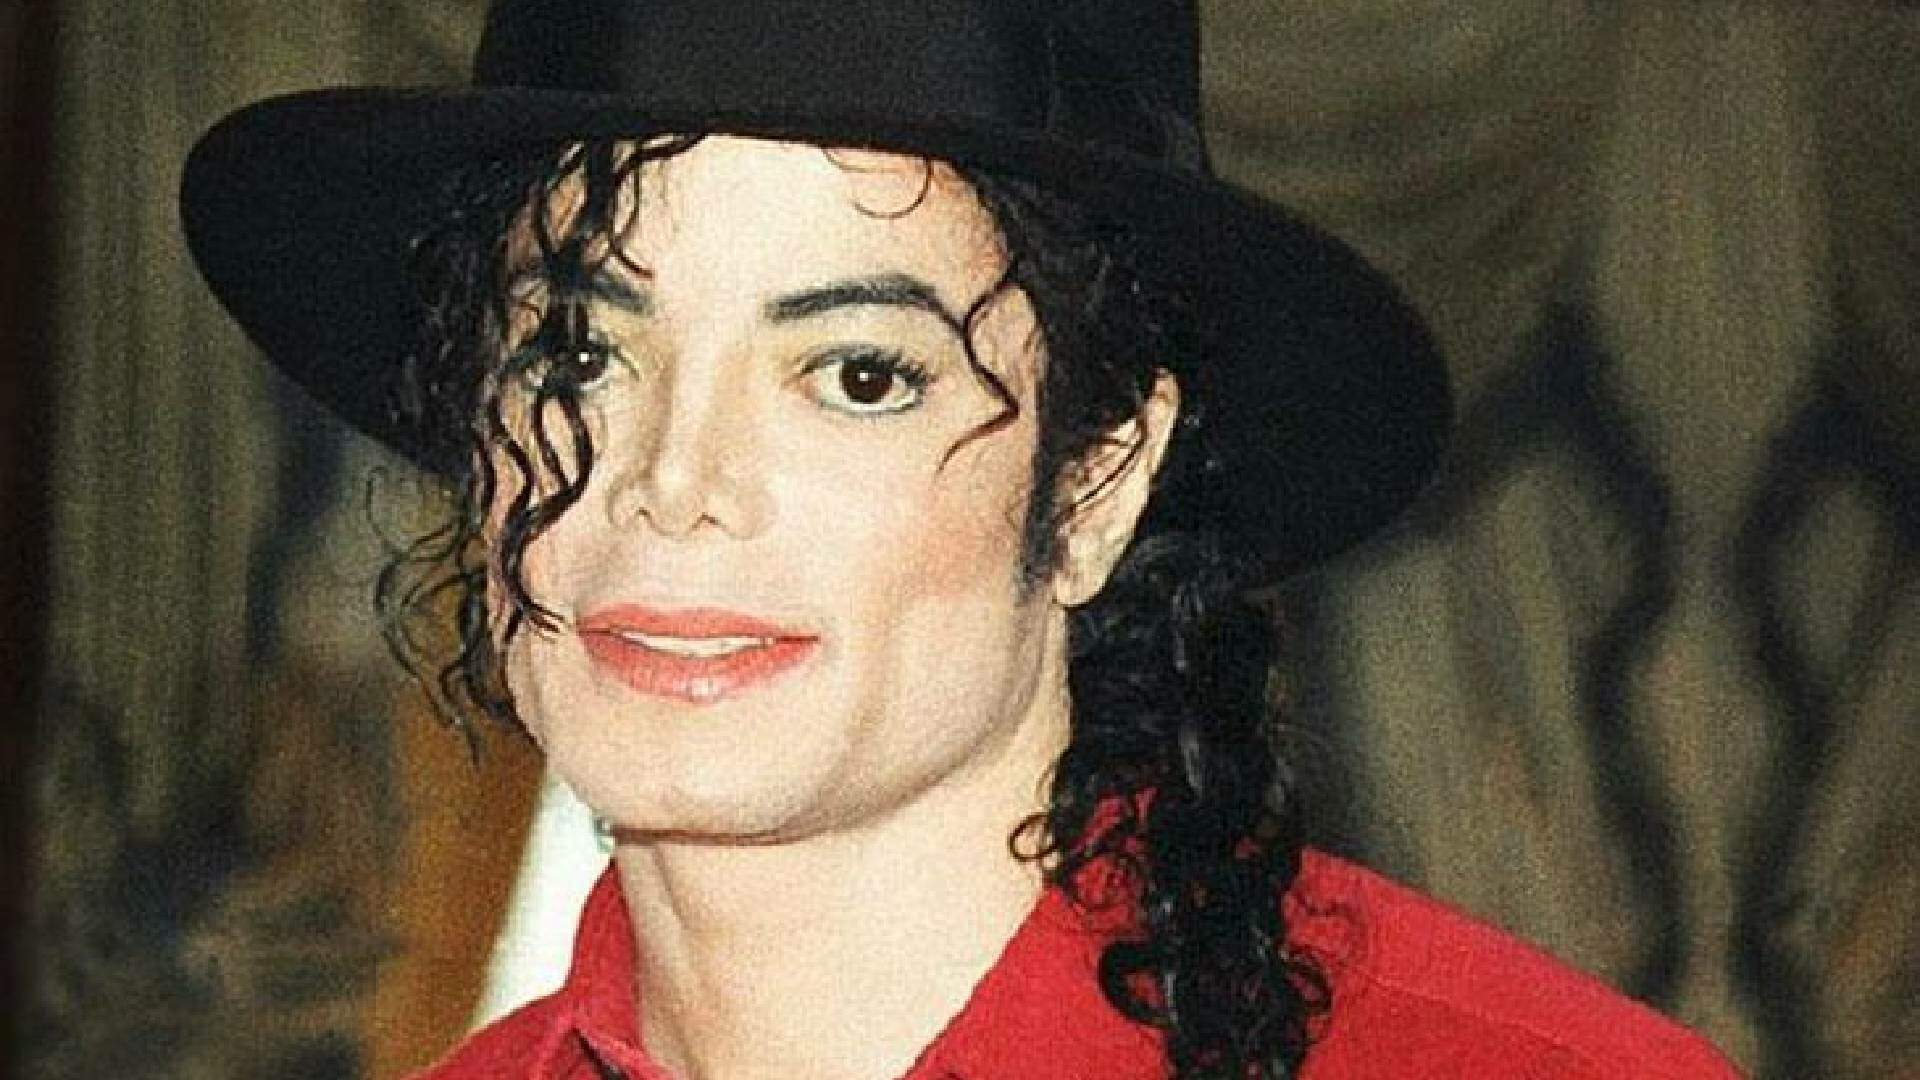 Gravadora ‘some’ com três músicas póstumas de Michael Jackson após decisão polêmica